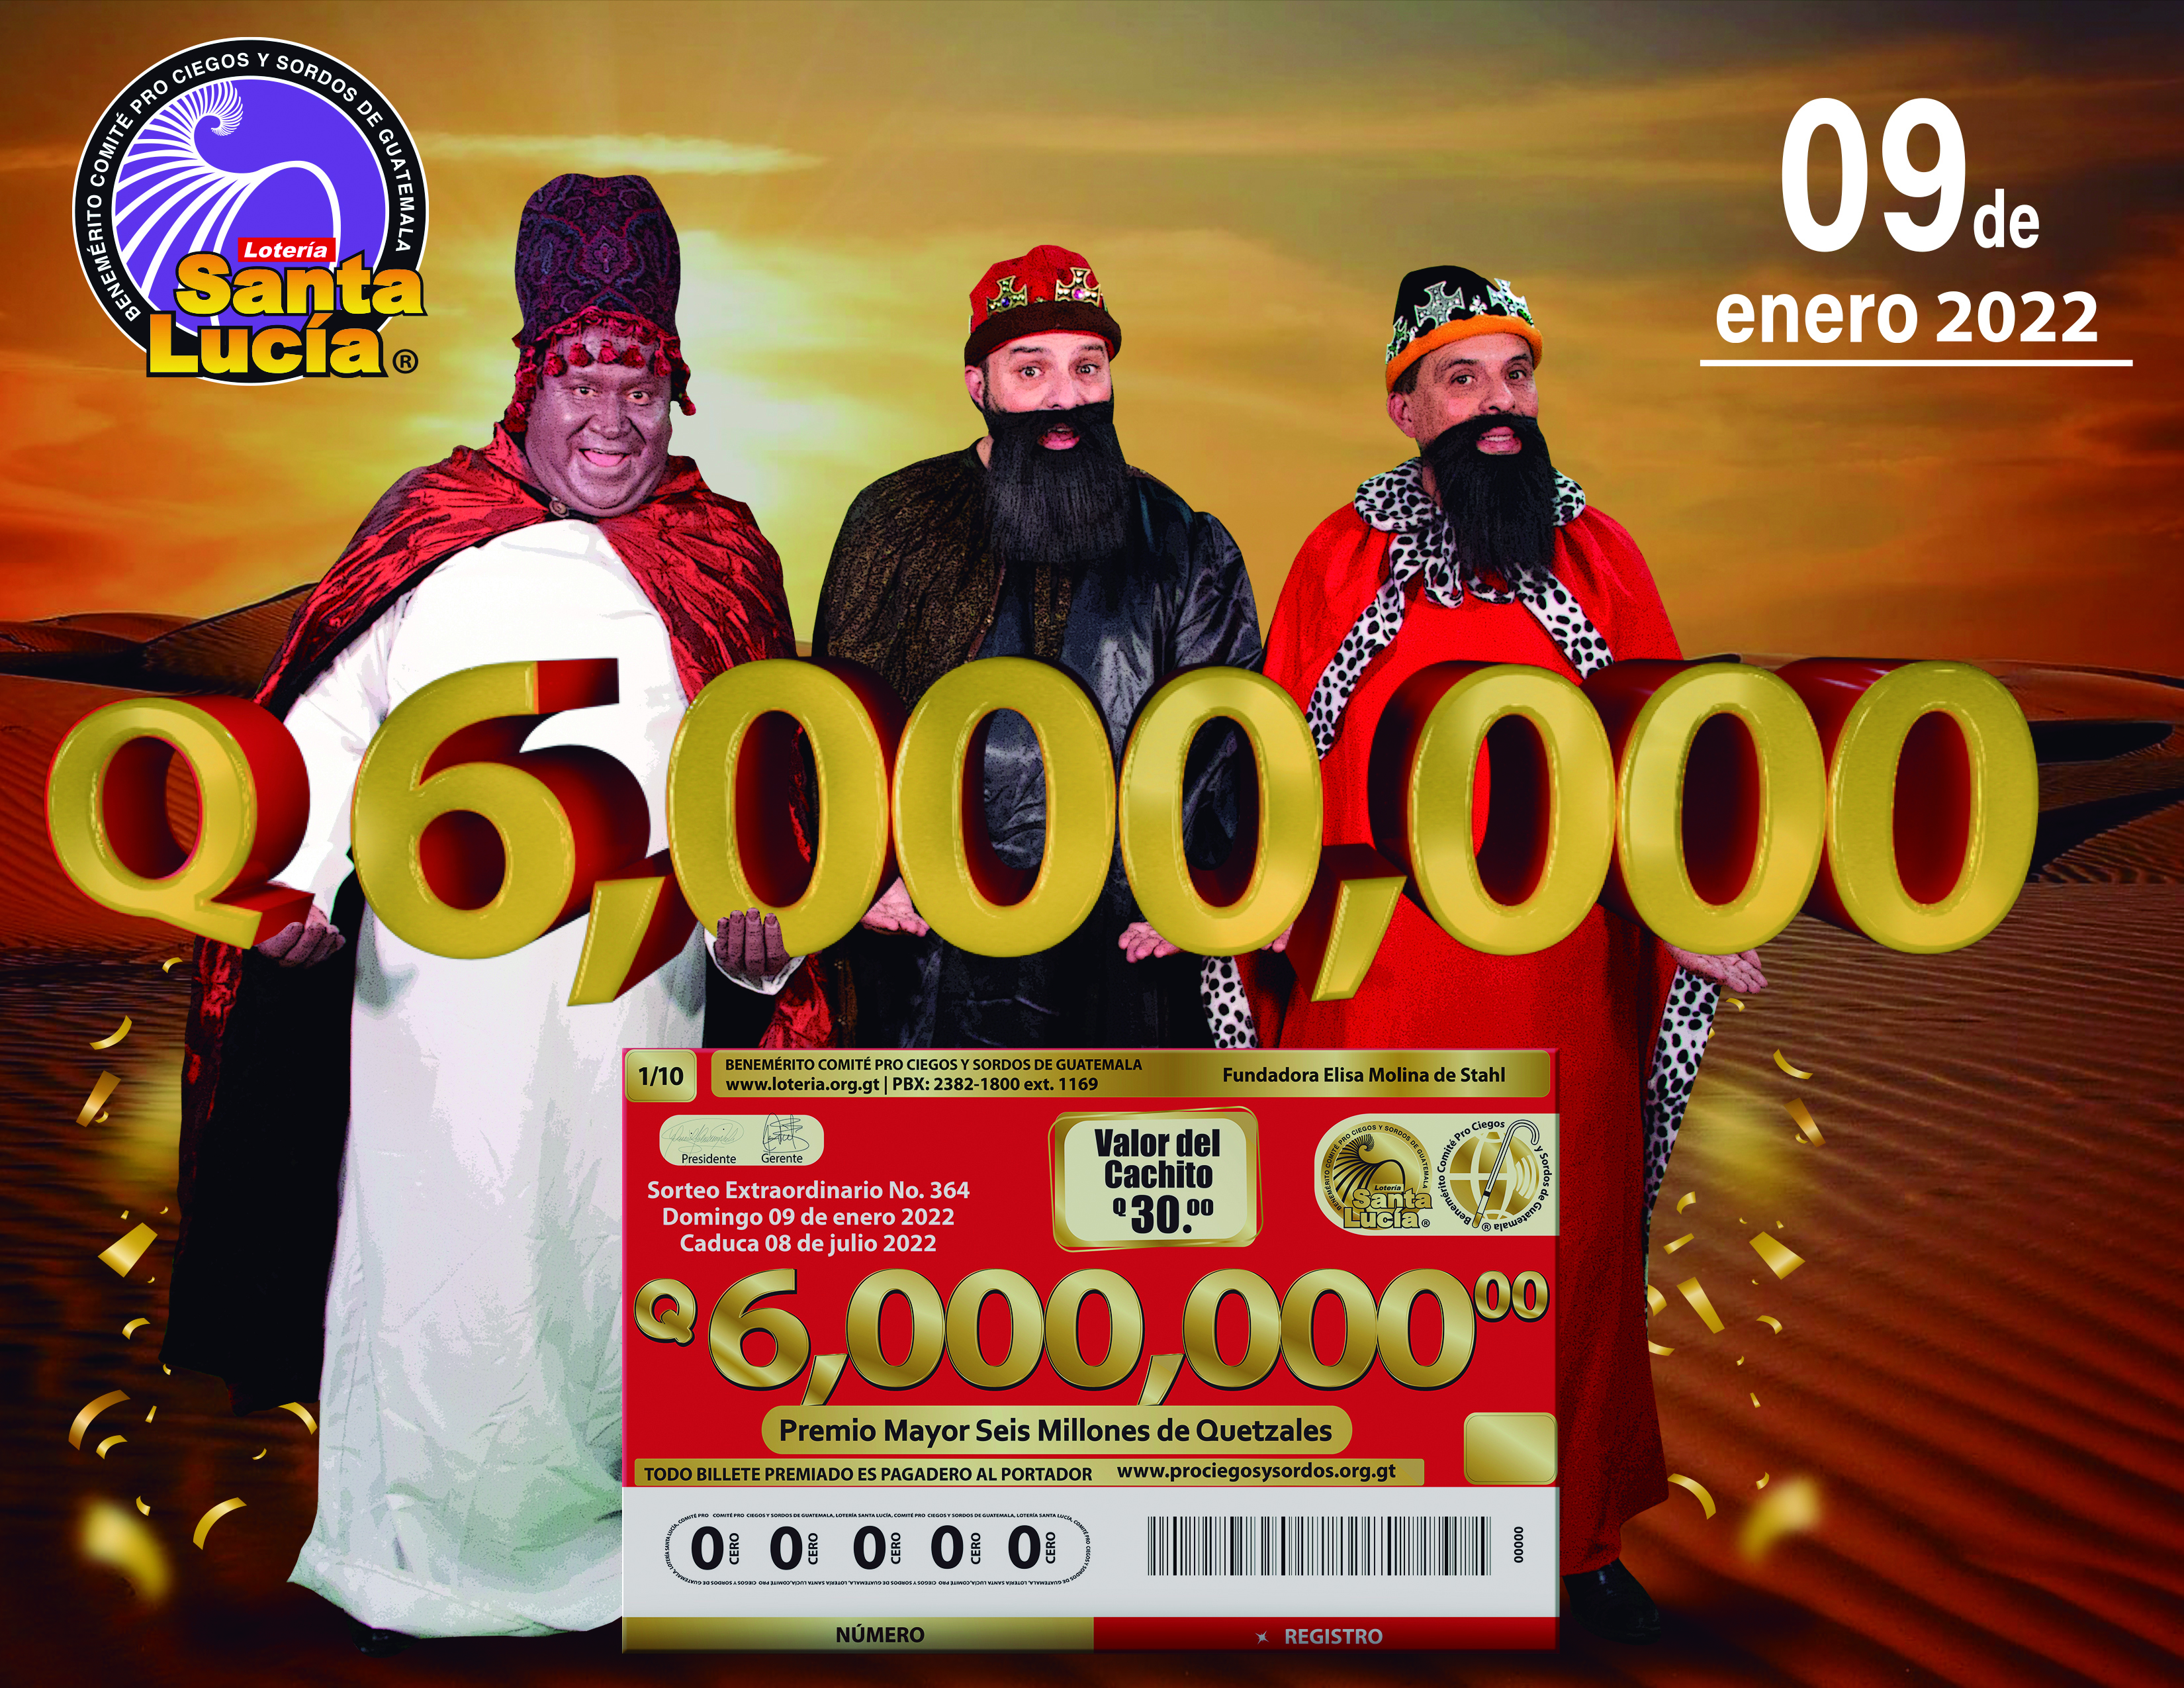 Un total de 19 millones entregará Lotería Santa Lucía en su sorteo extraordinario. Foto Prensa Libre: Cortesía.